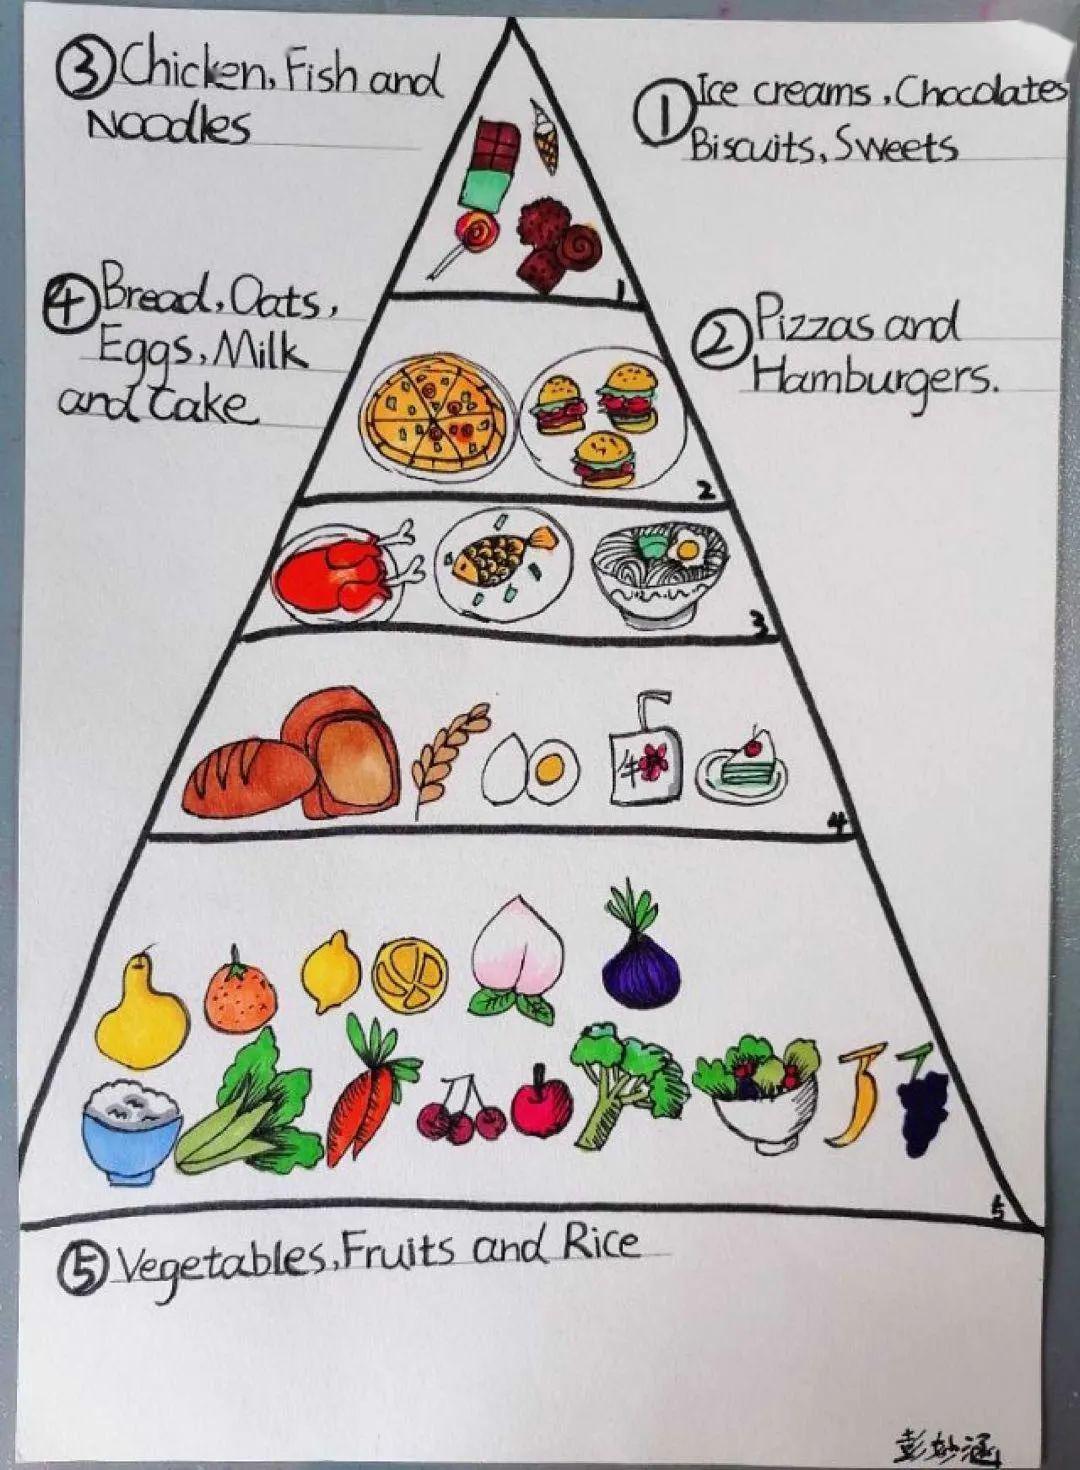 pyramid(健康饮食金字塔)的概念,并在课后布置学生们收集资料,动手画